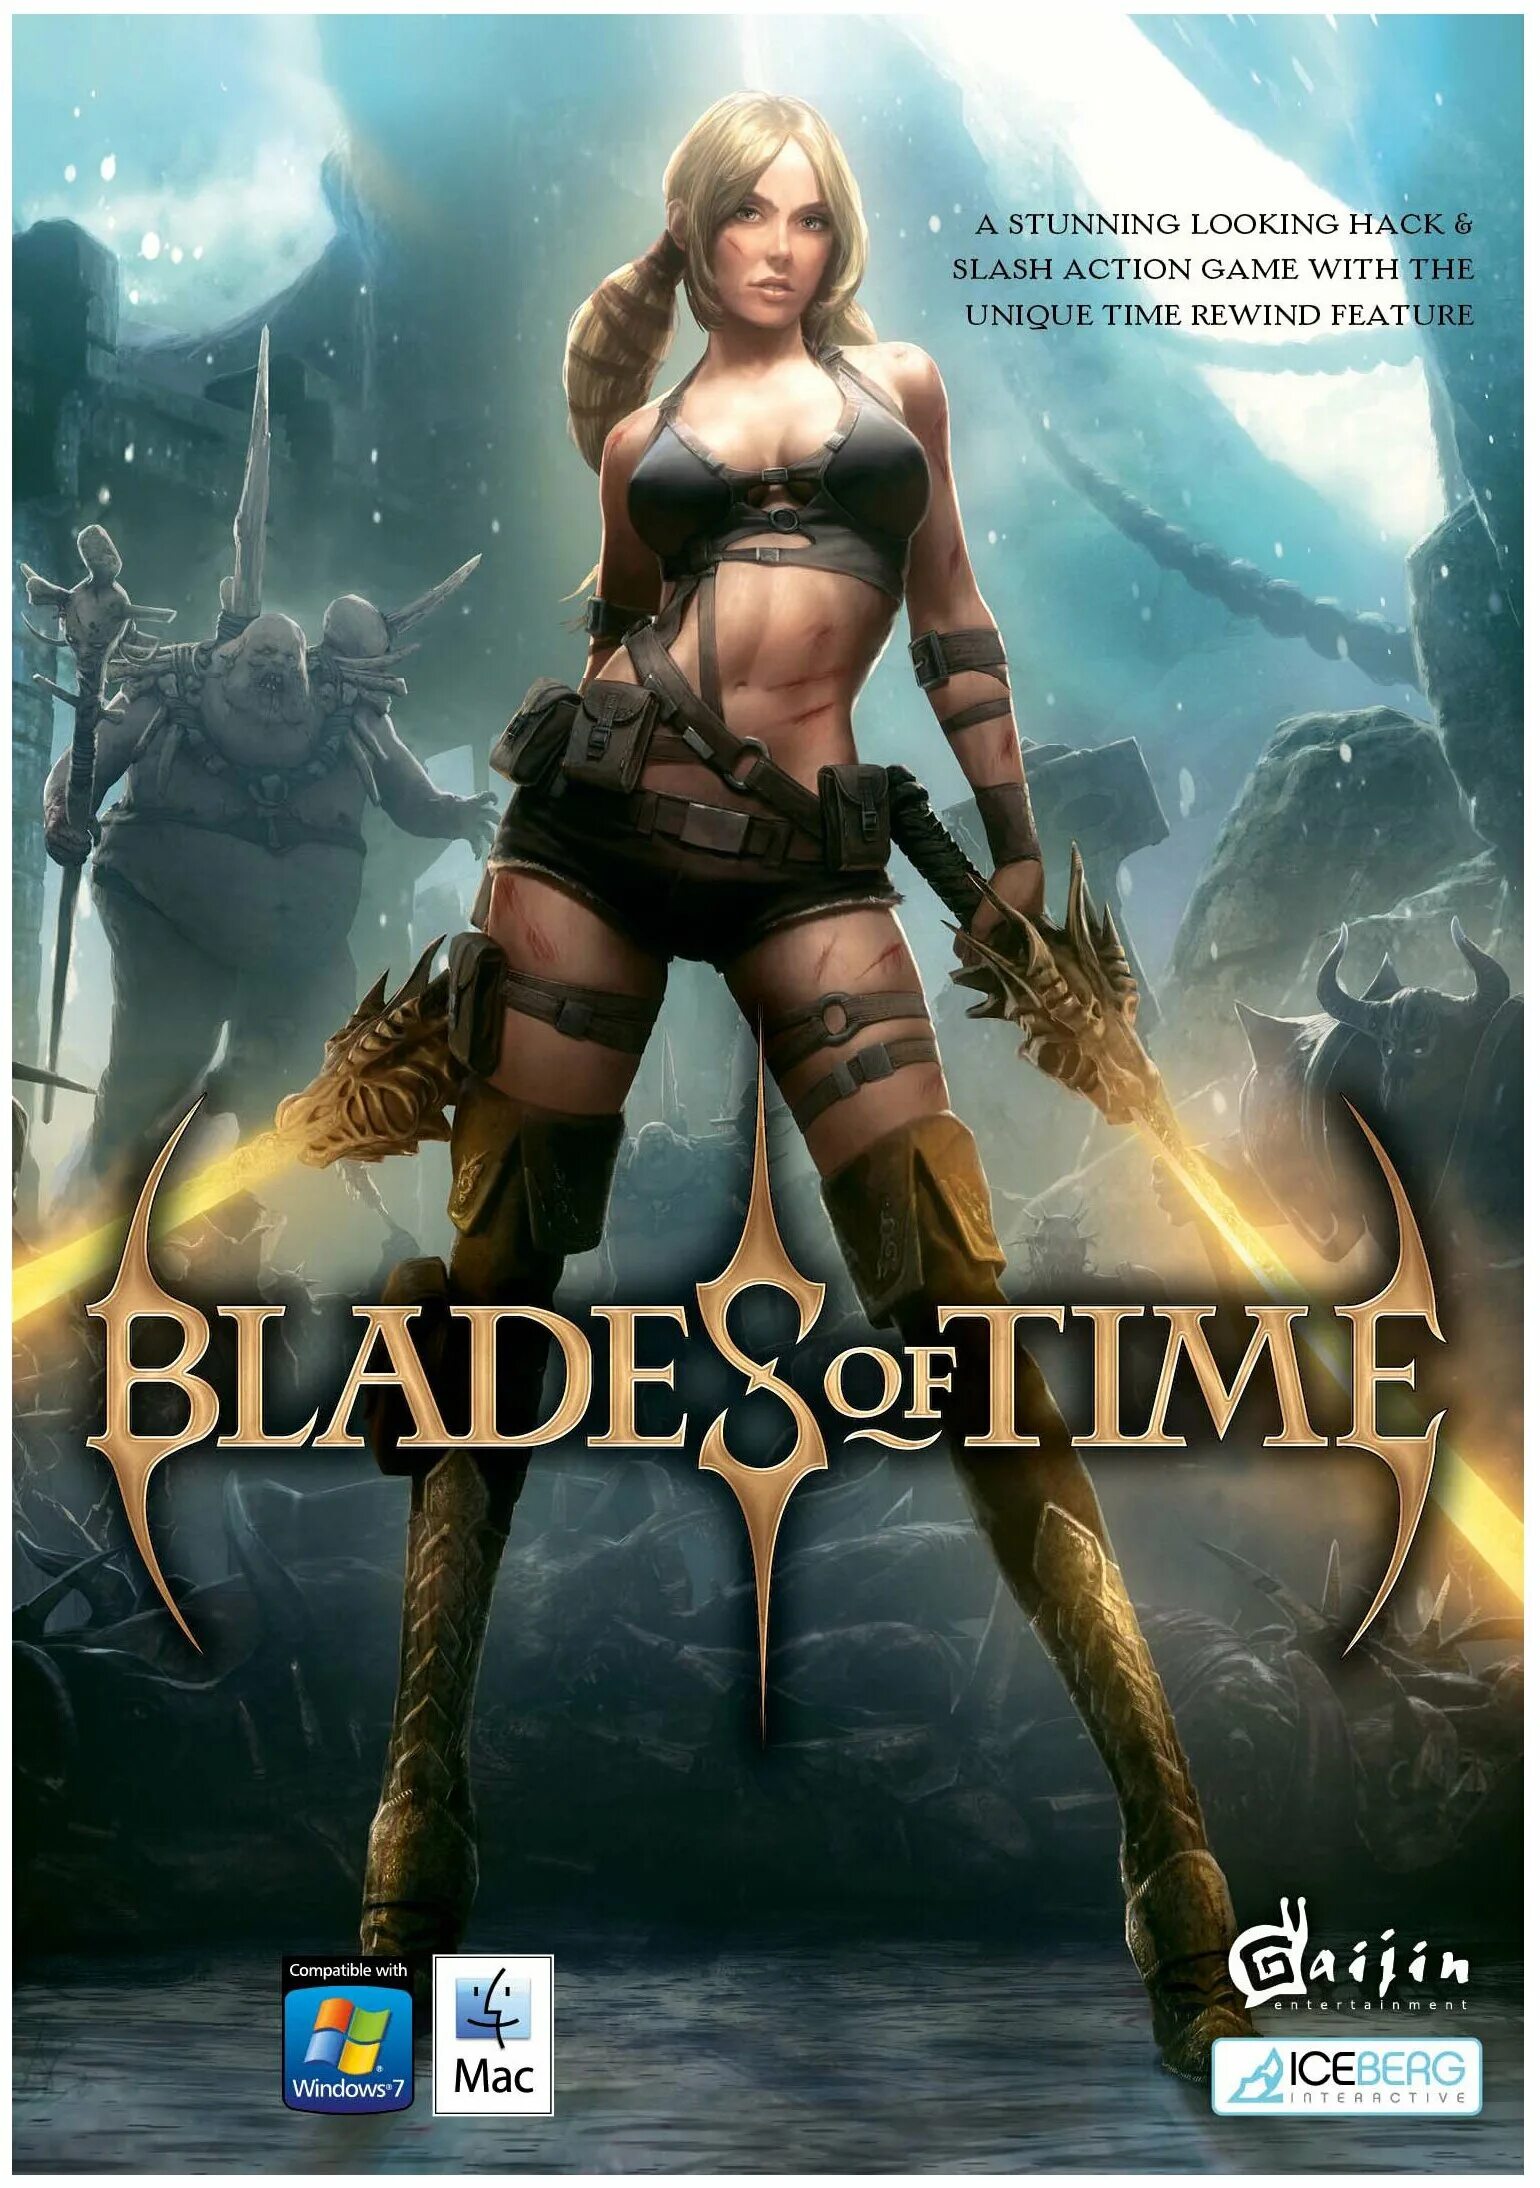 Blades купить игру. Blades of time Аюми. Blades of time Аюми дракон. Blades of time ps3. Лучшие компьютерные игры для девушек.